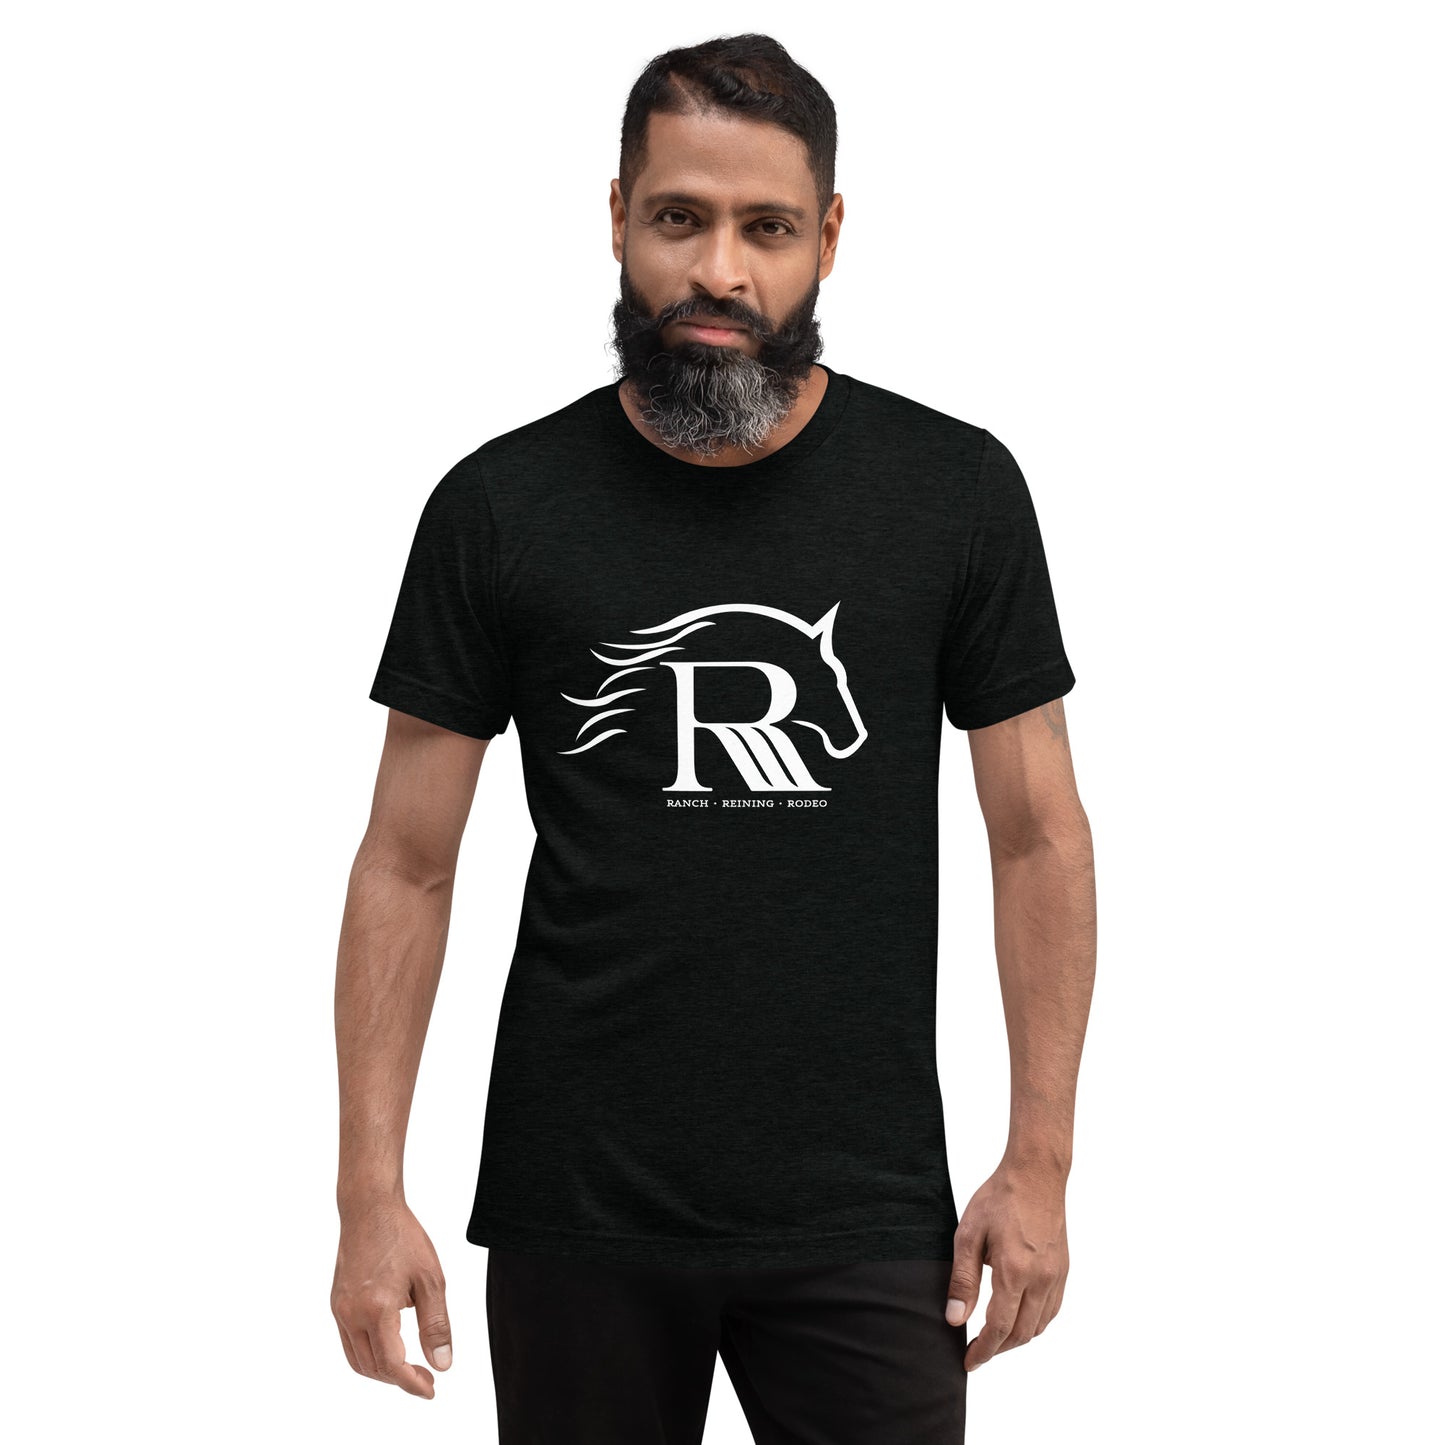 RRR Horse Short Sleeve T-shirt